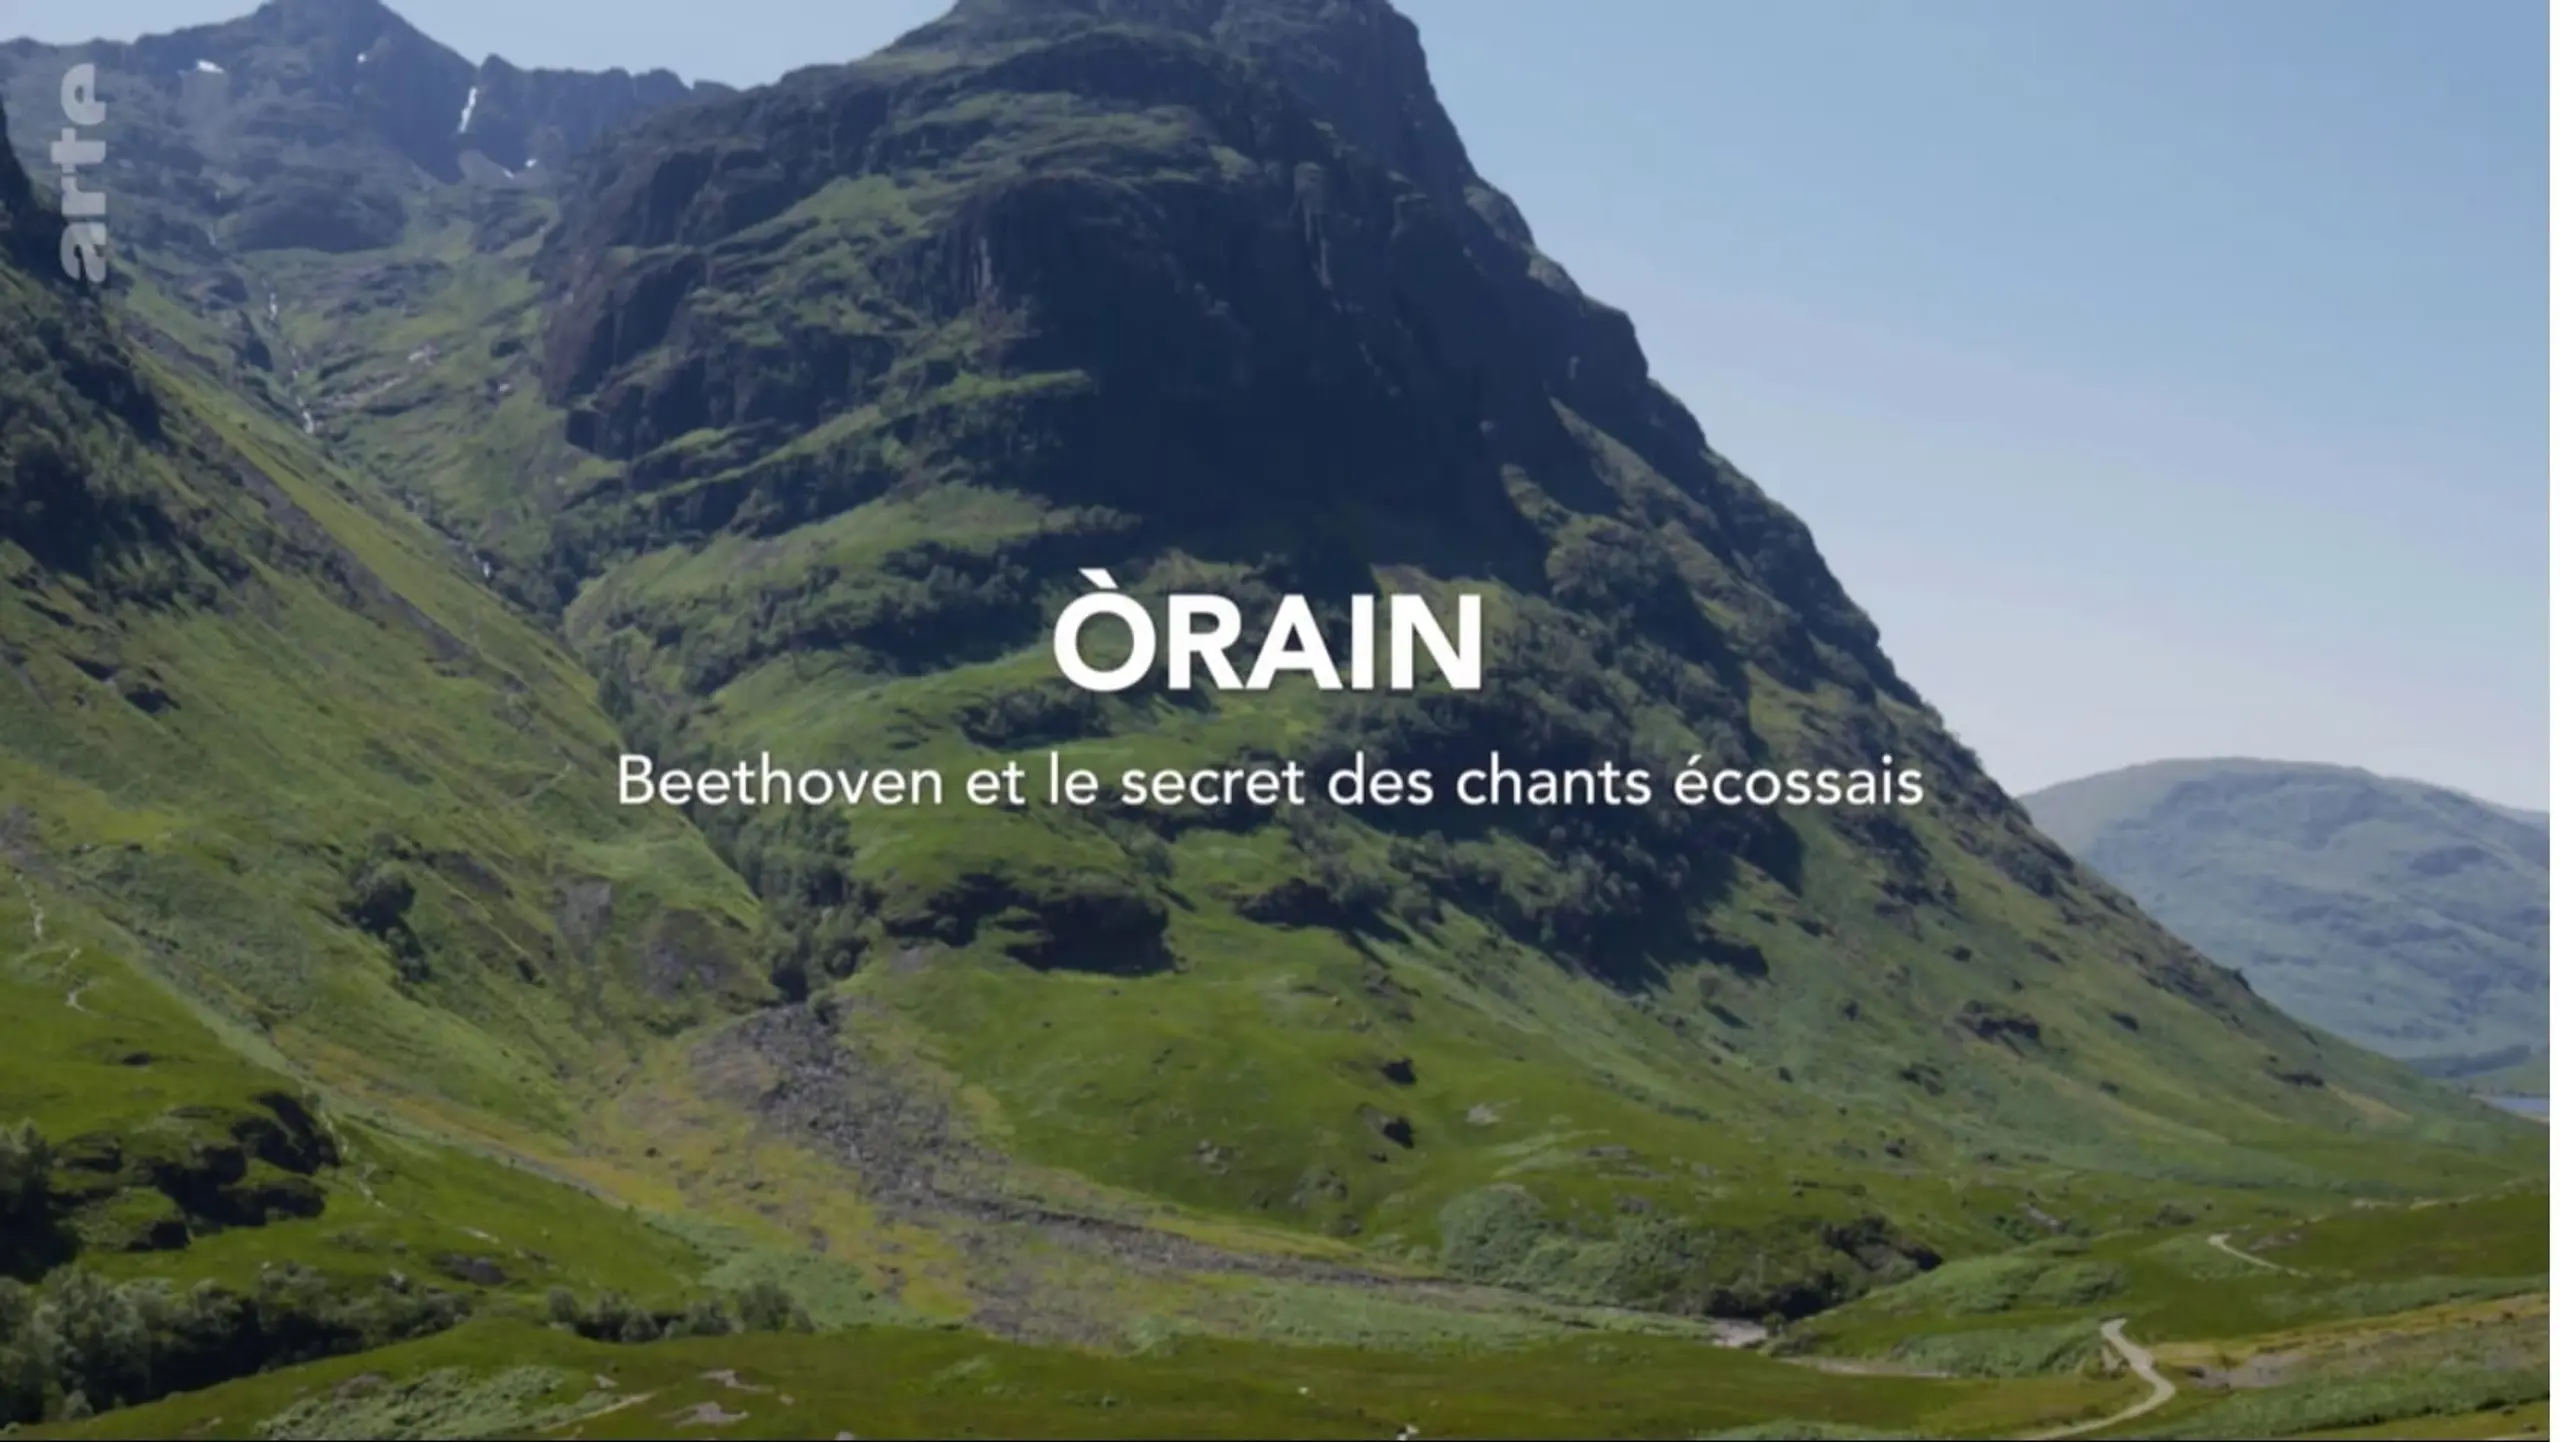 Òrain: Das Geheimnis um Beethovens schottische Lieder